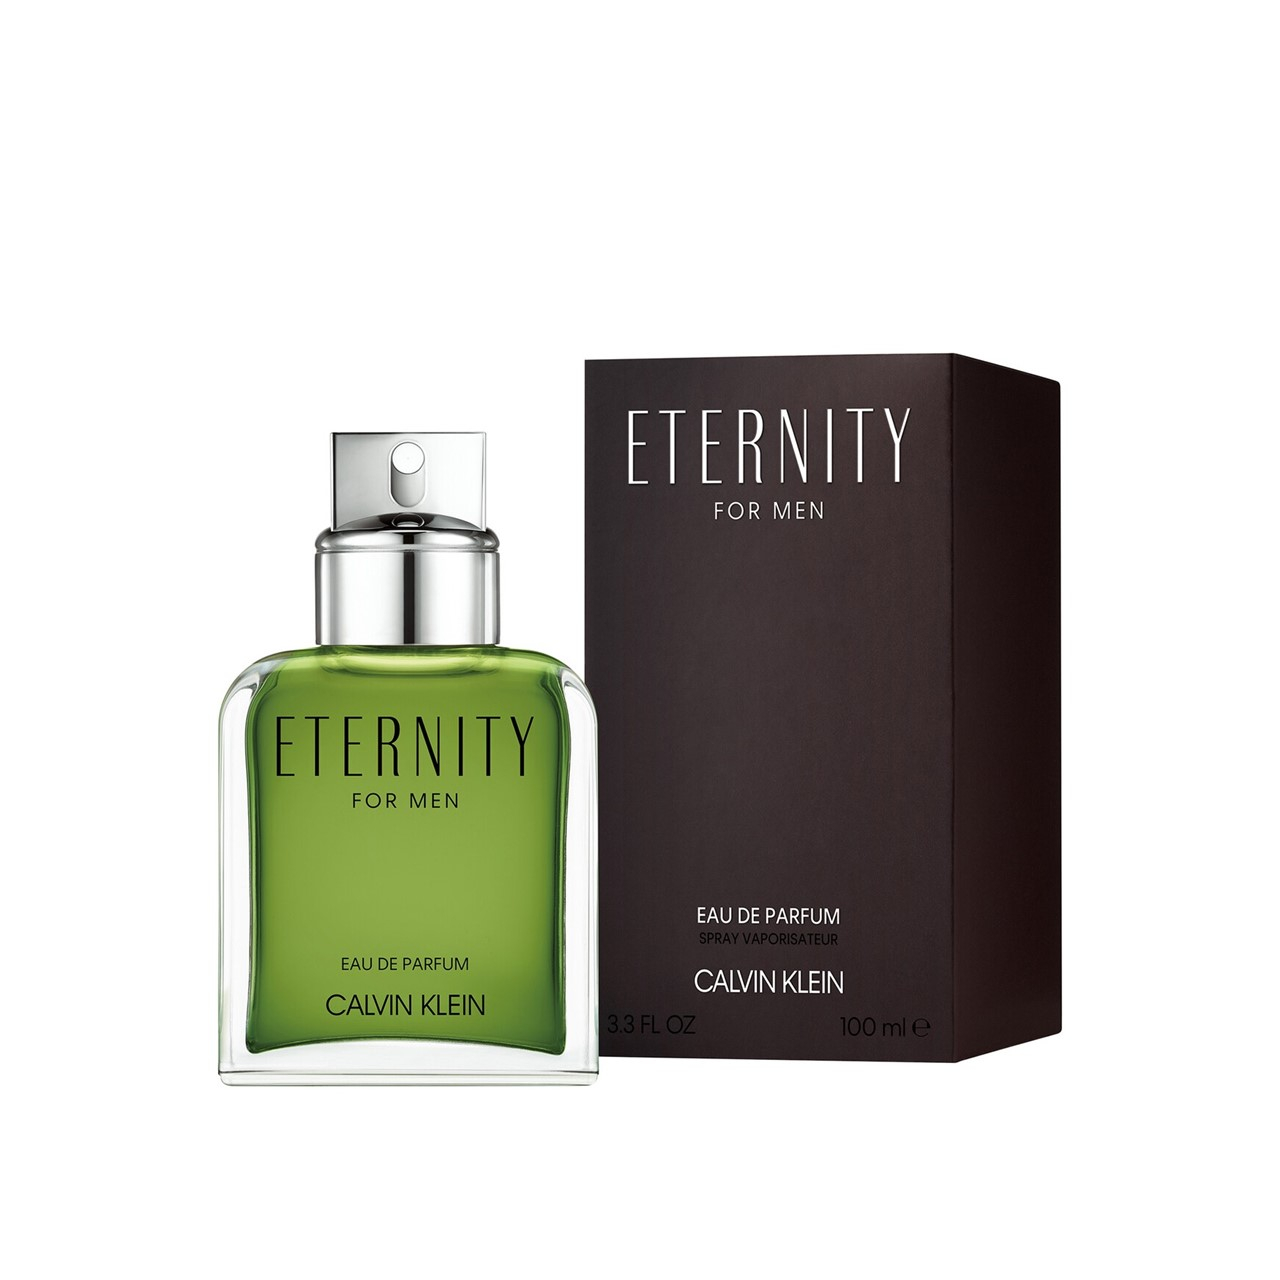 Calvin Klein Eternity For Men Eau de Parfum 100ml (3.4fl oz)